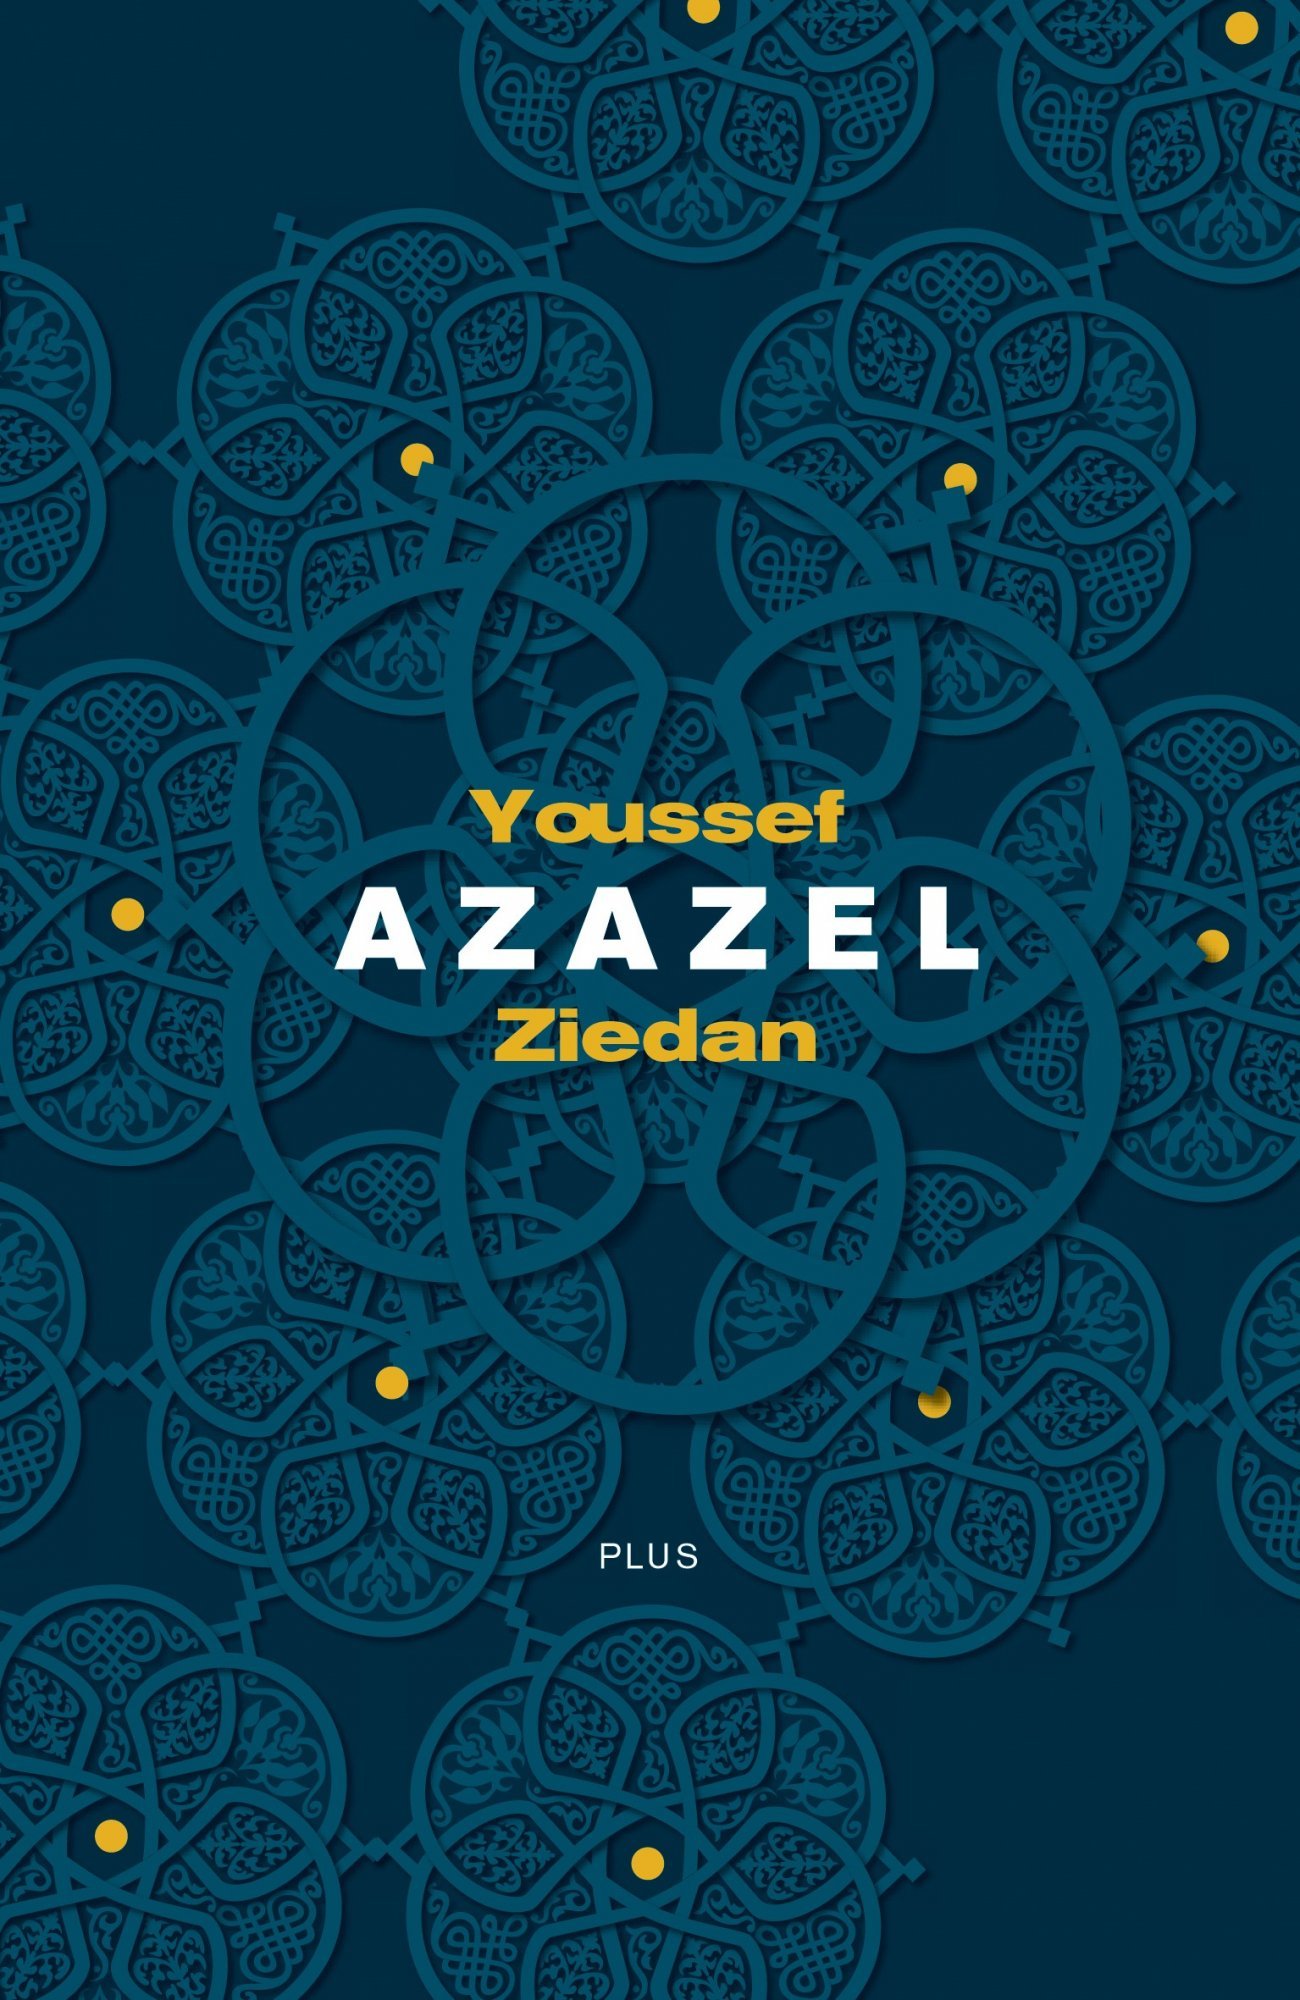 Azazel - Youssef Ziedanh